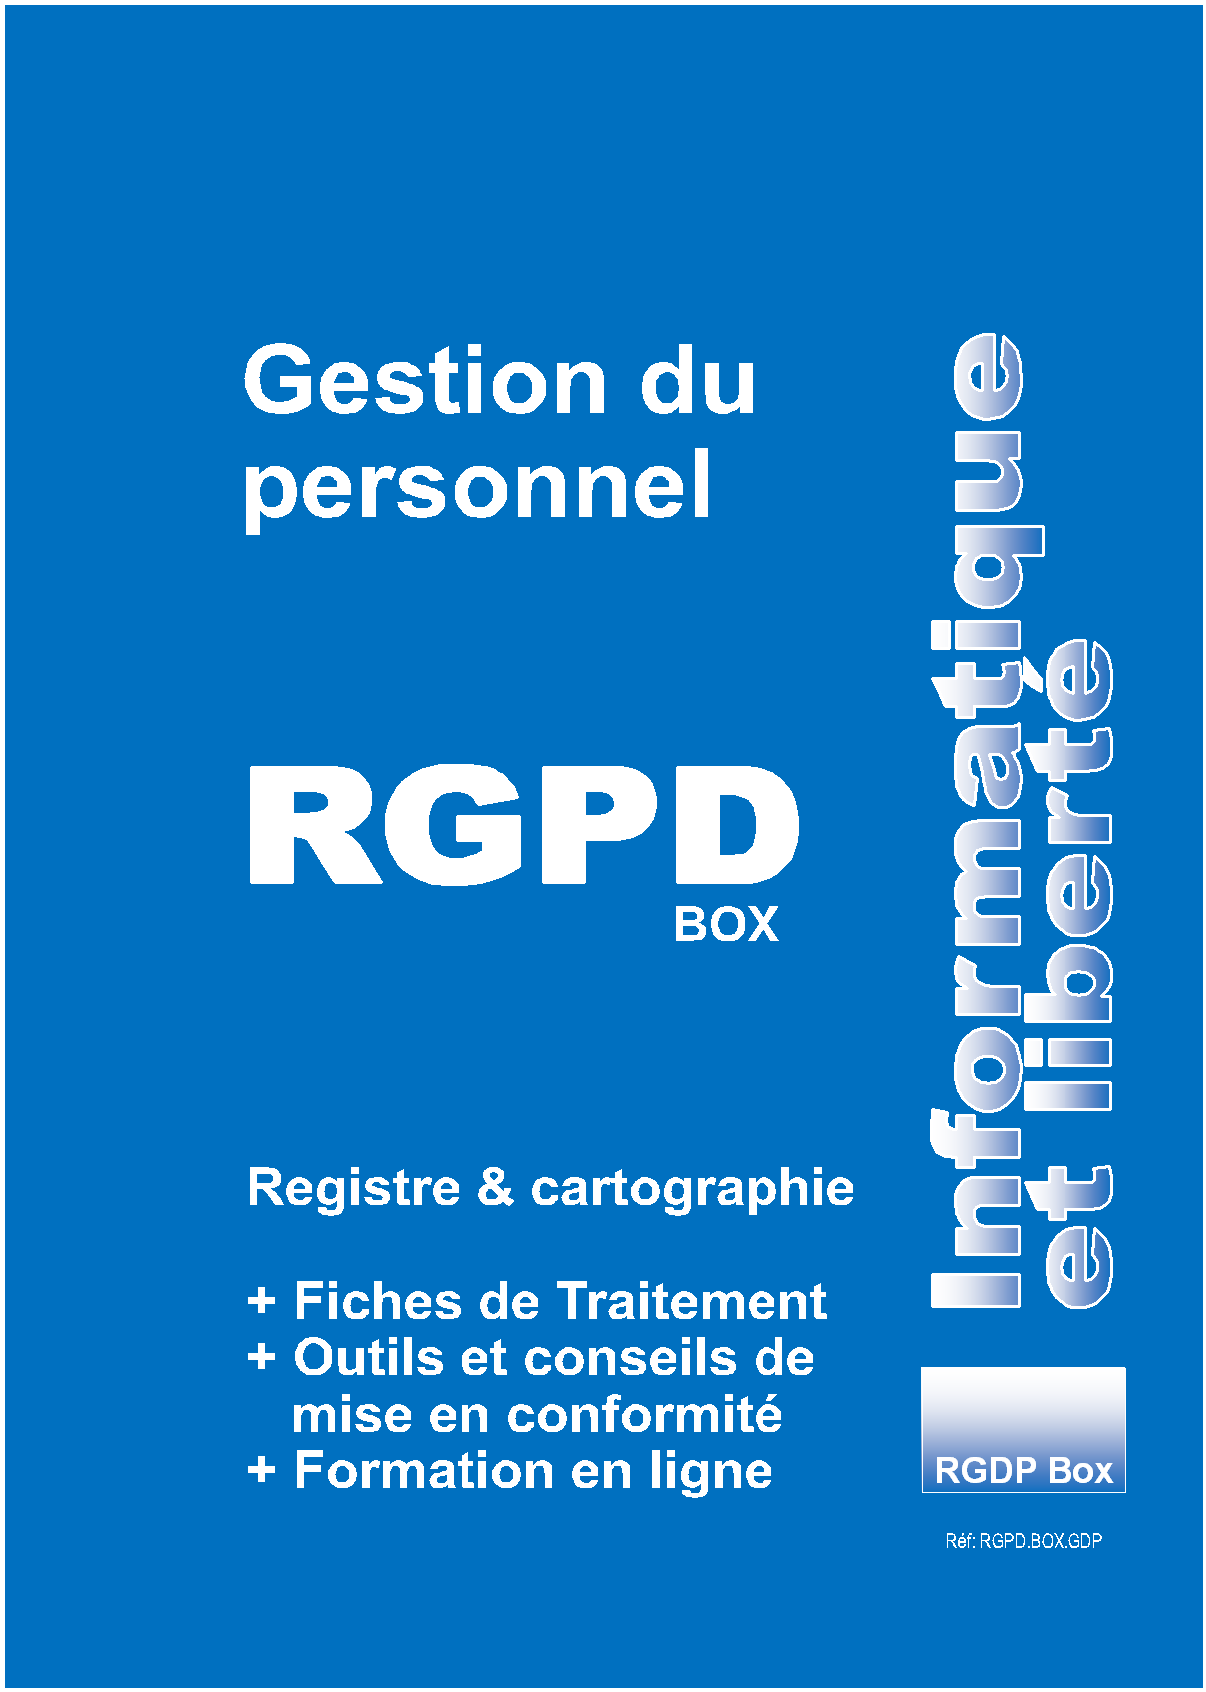 RGPD Gestion du Personnel